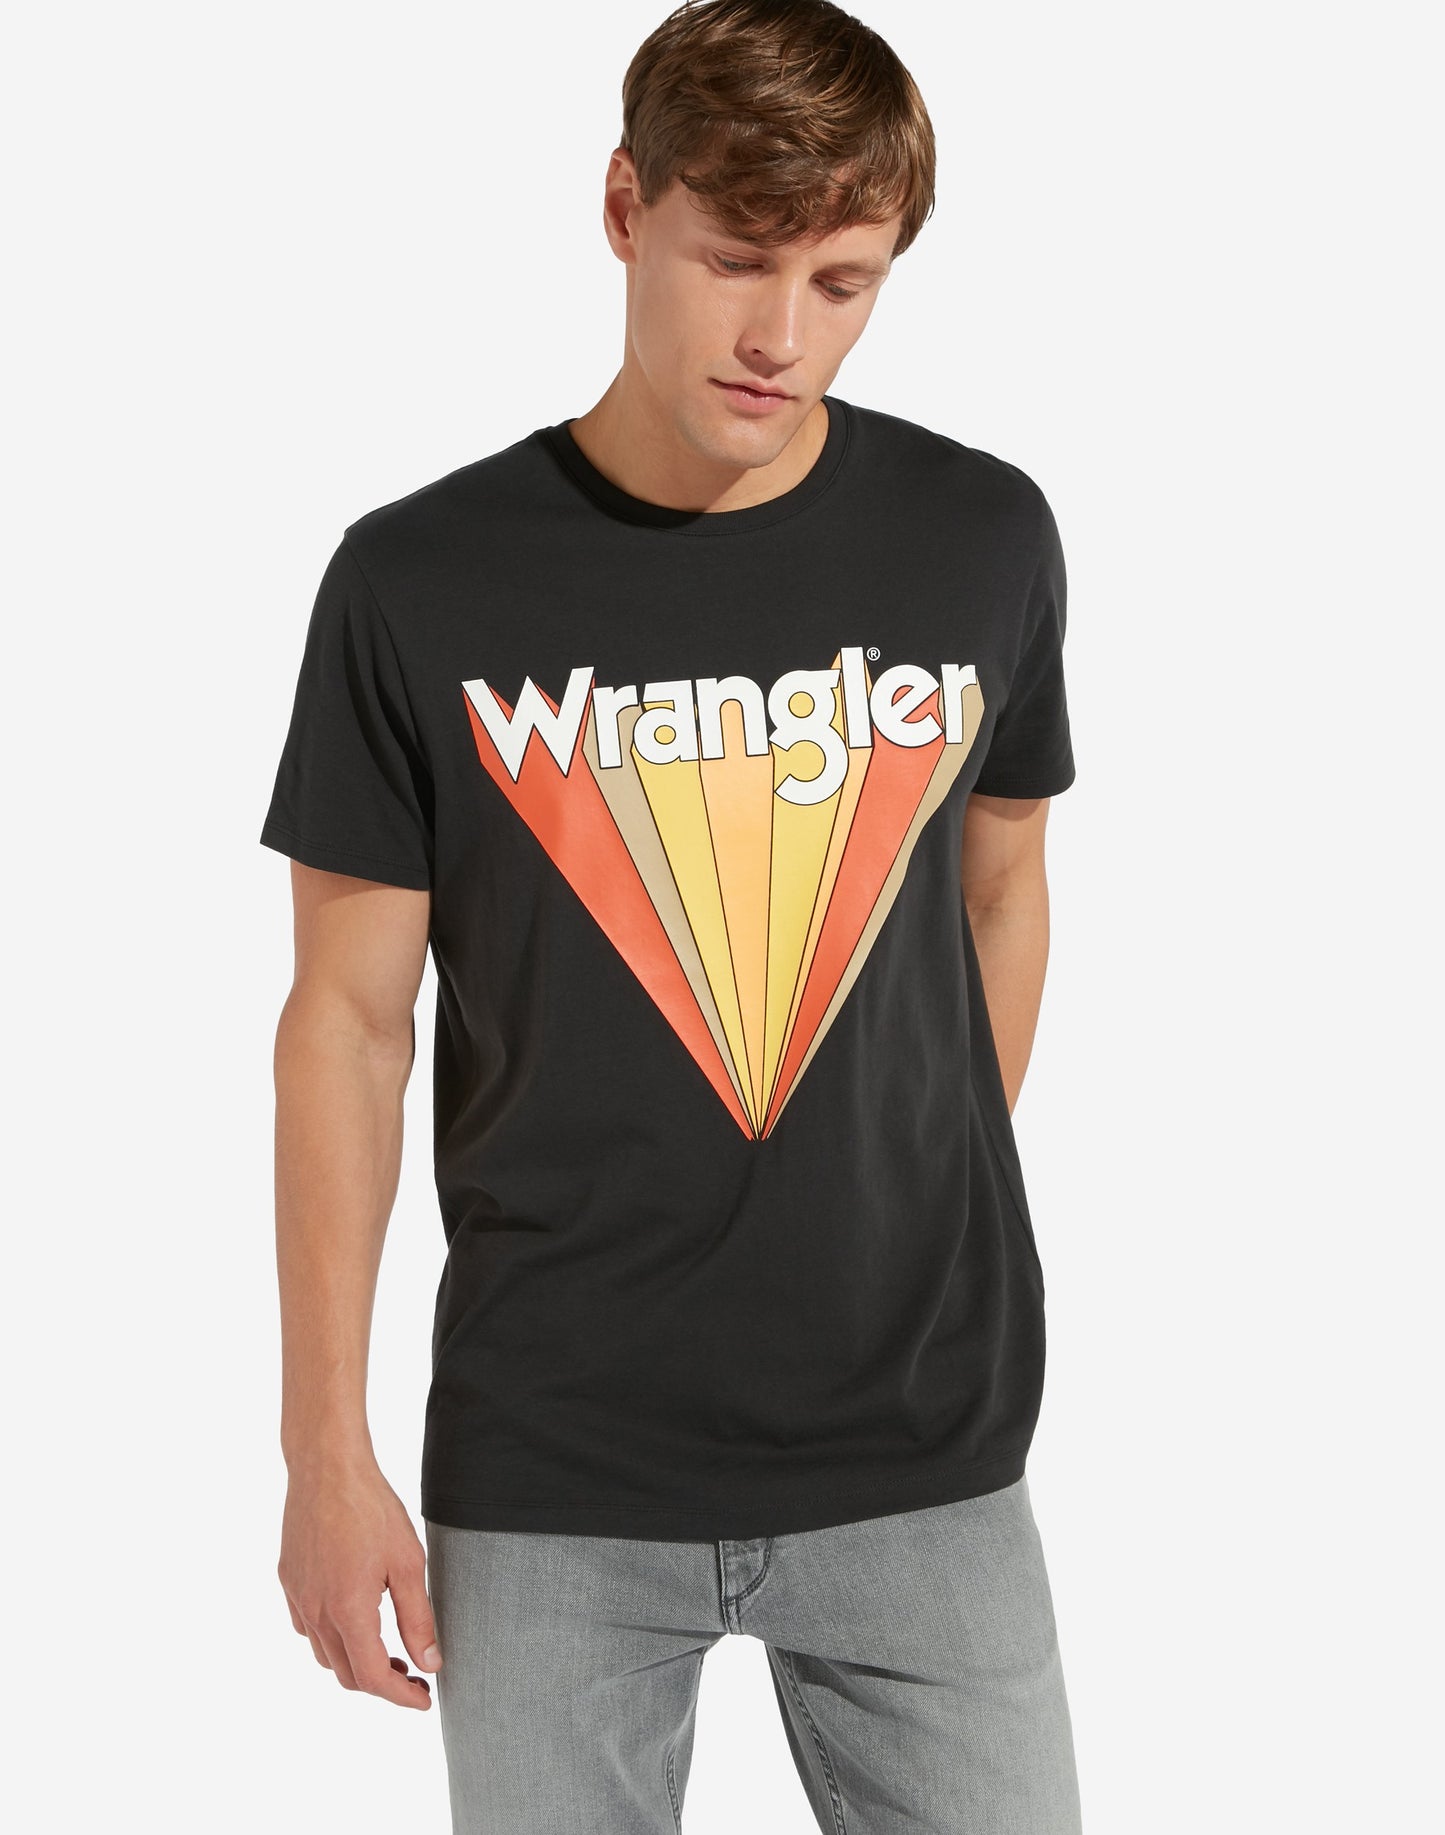 Wrangler graphic tee - 8586